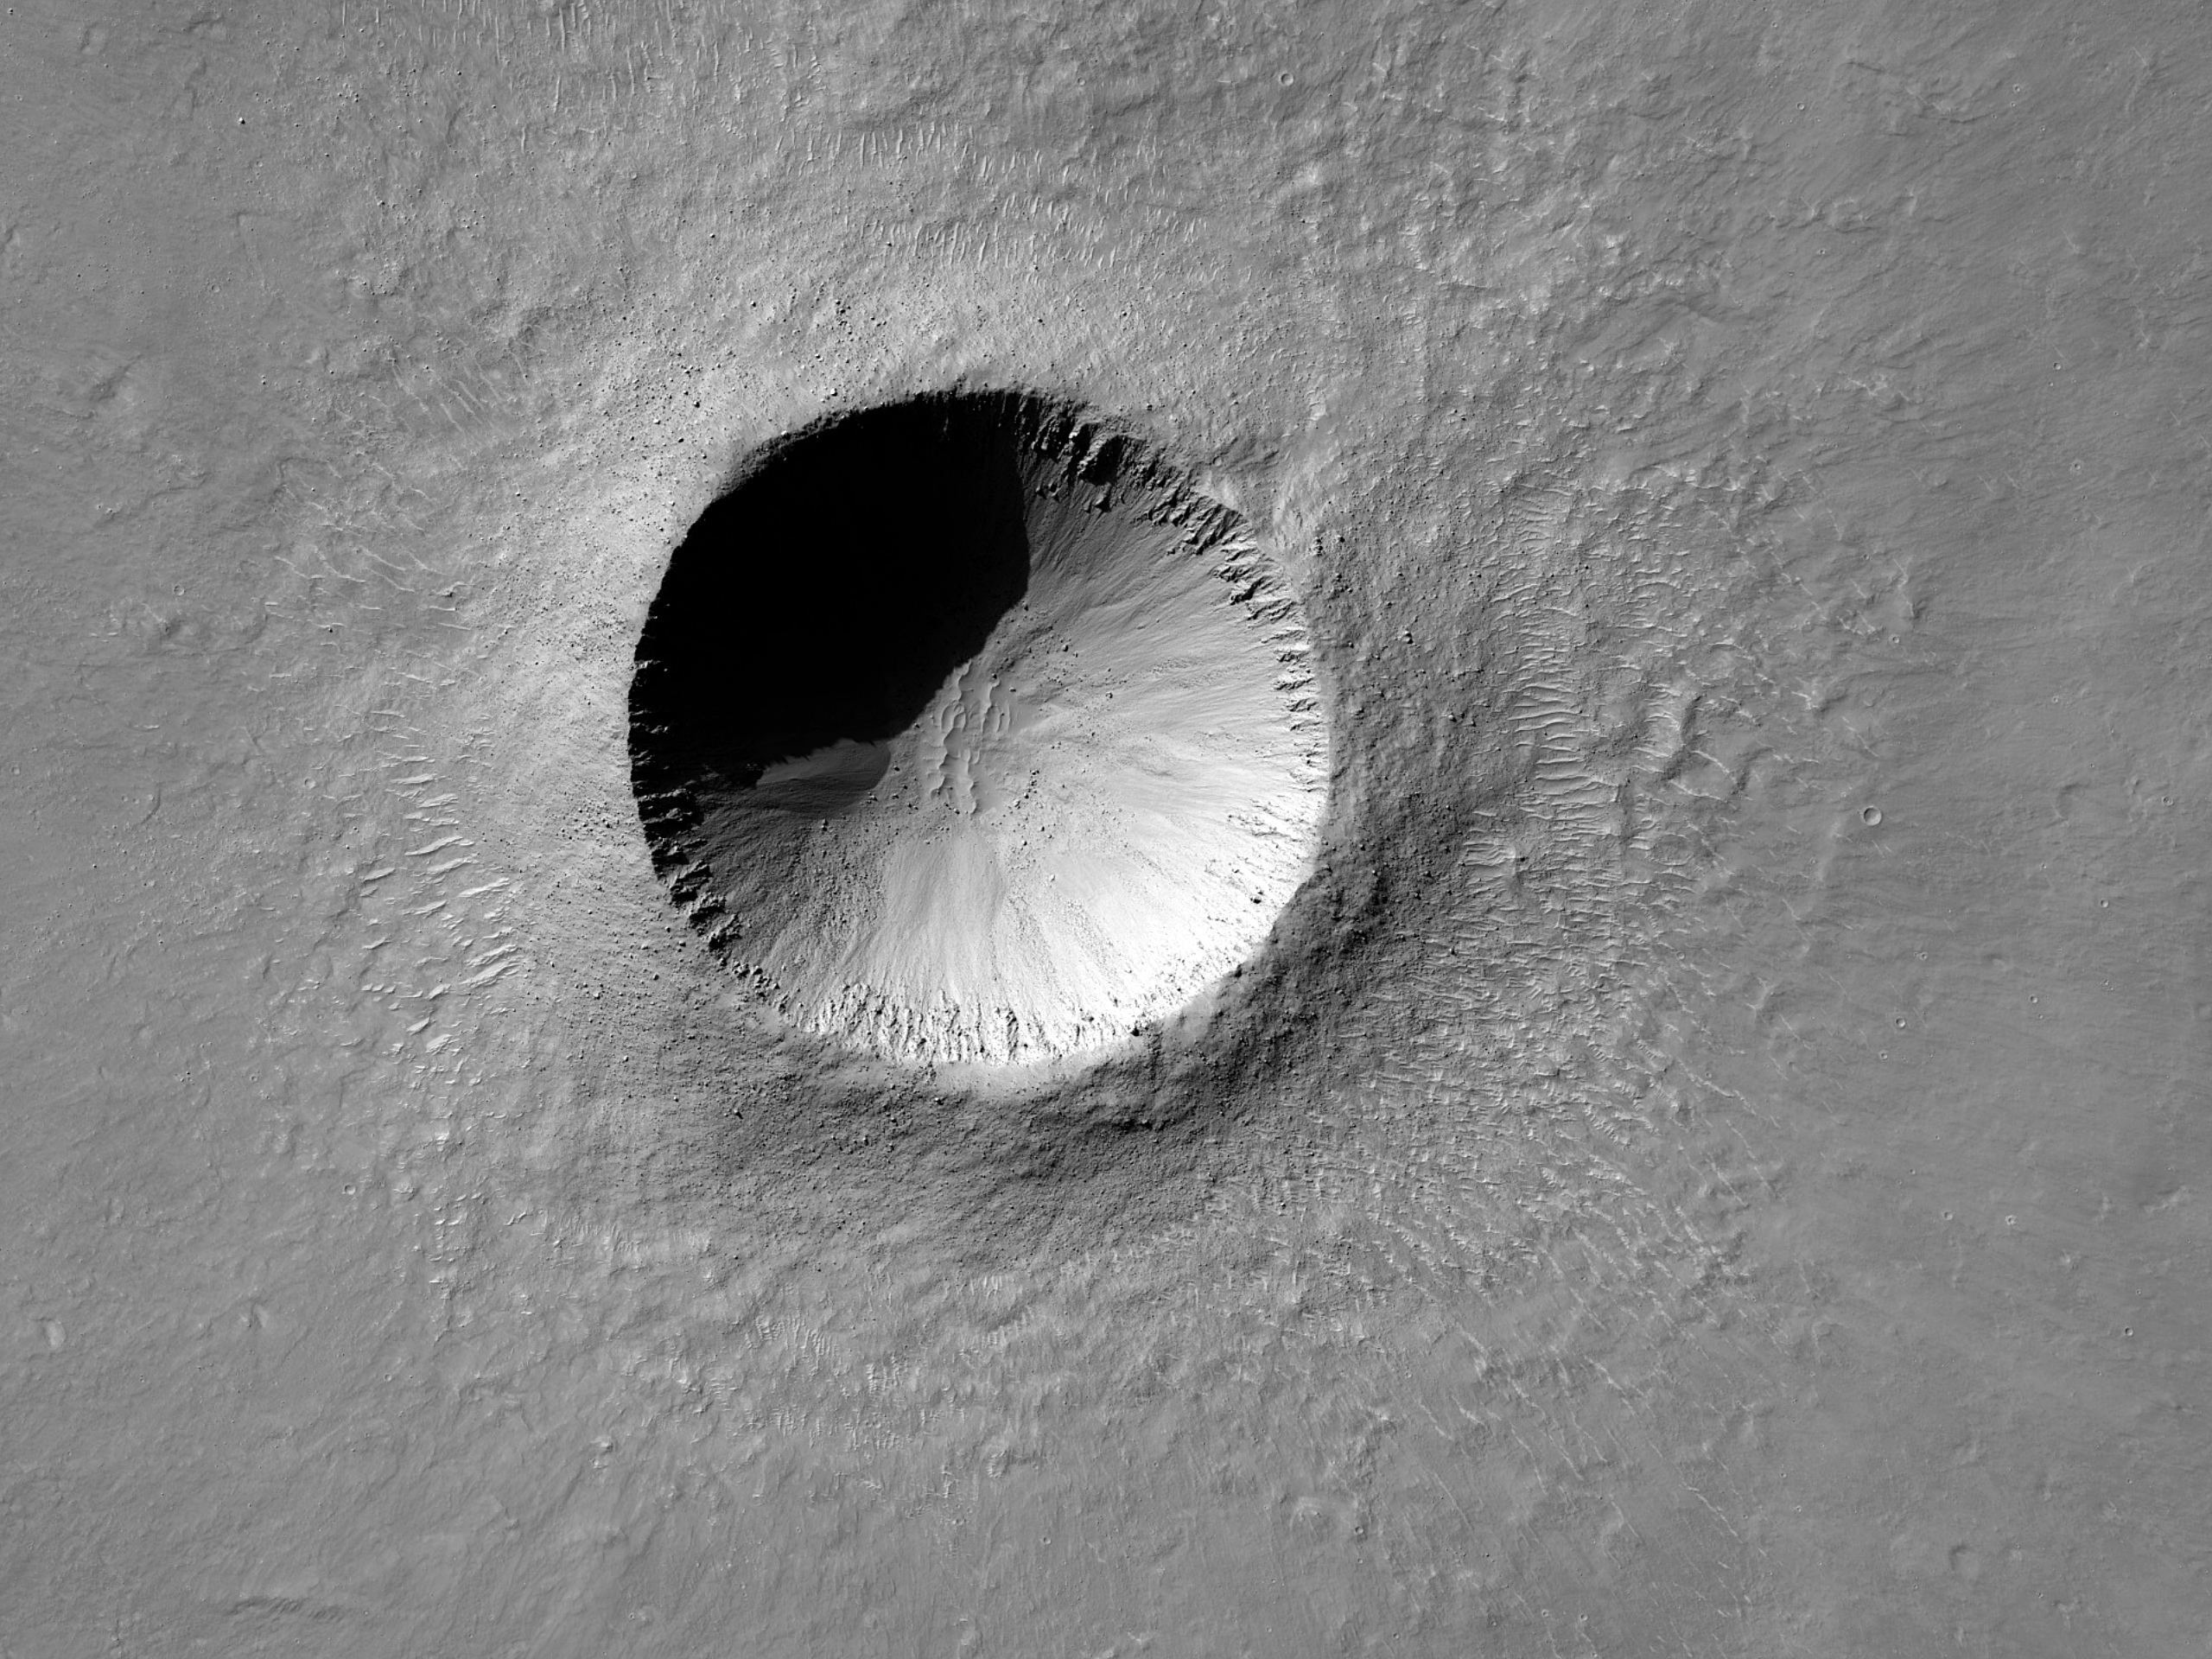 Új, két kilométeres kráter a Gusev kráter közelében